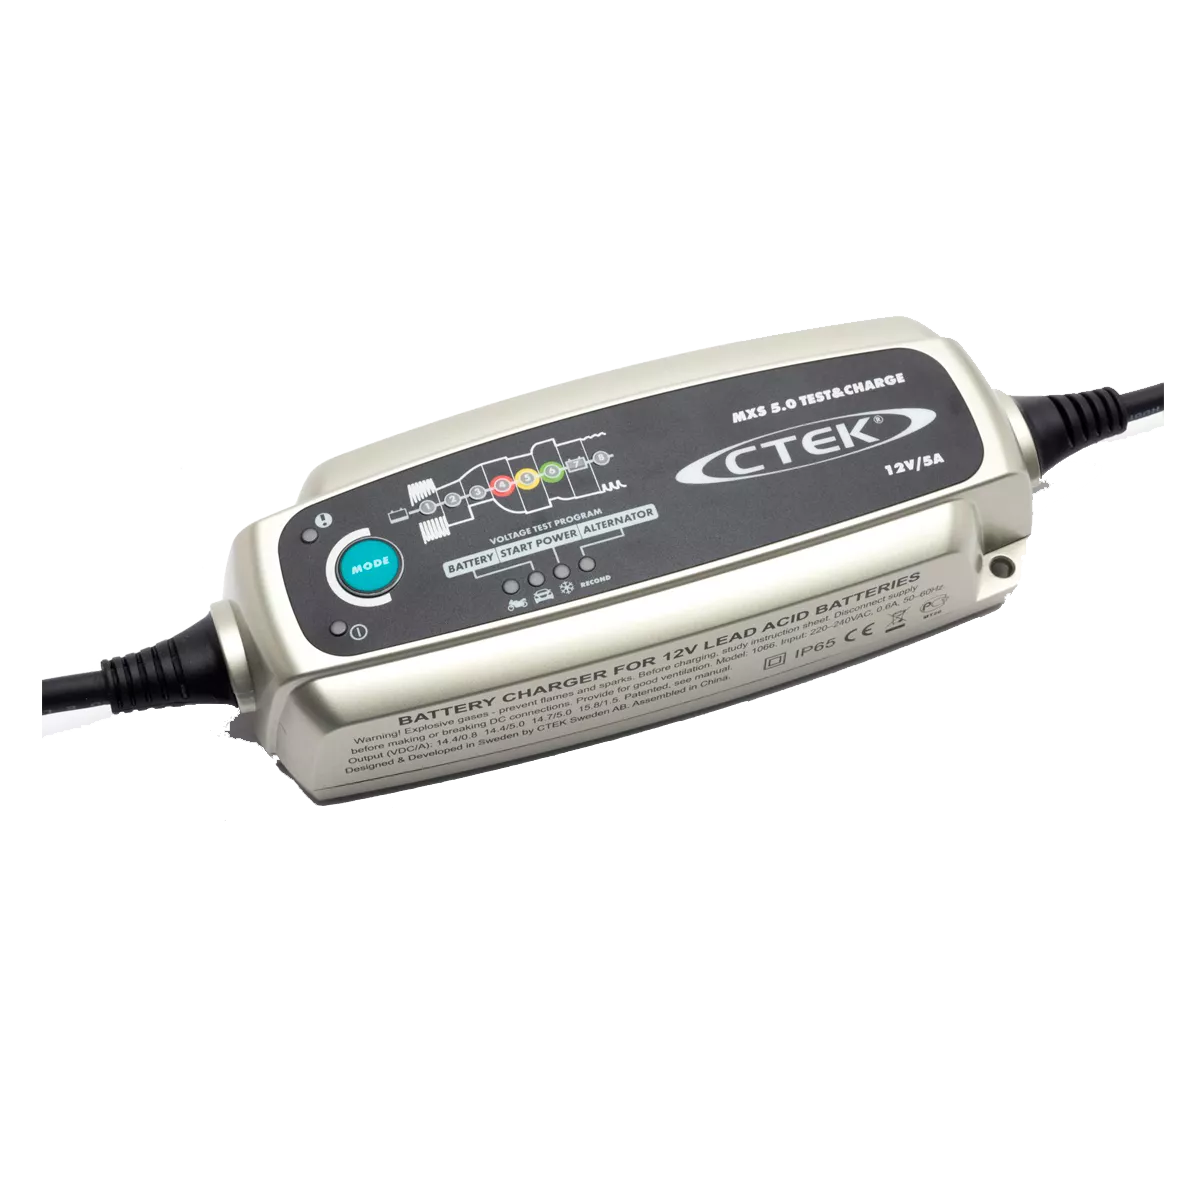 Зарядное устройство CTEK MXS 5.0 Test & Charge (56-308) - купить по  доступной цене: цена, отзывы